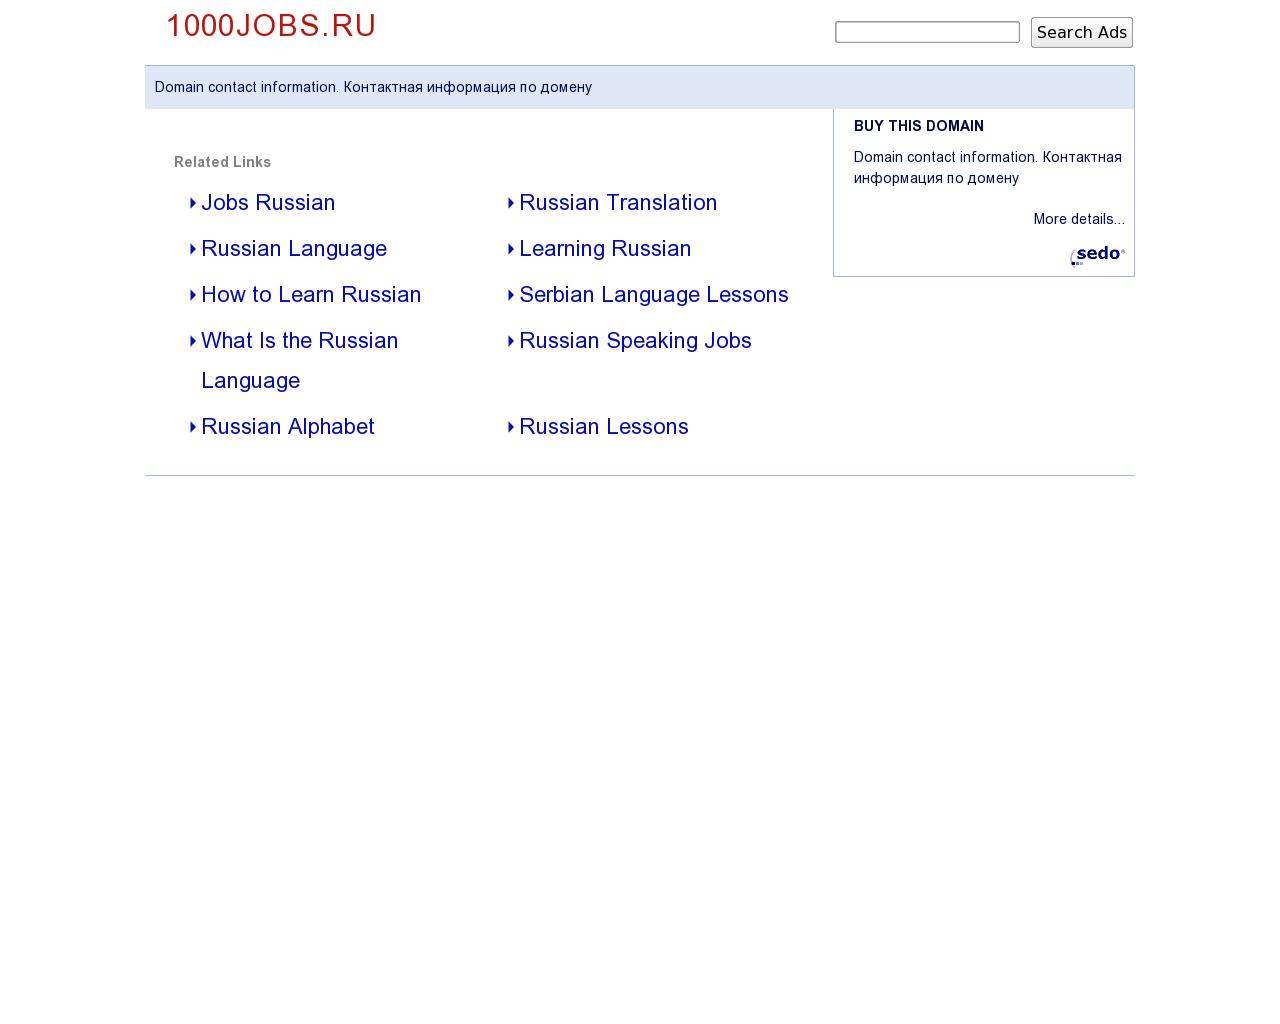 Изображение сайта 1000jobs.ru в разрешении 1280x1024